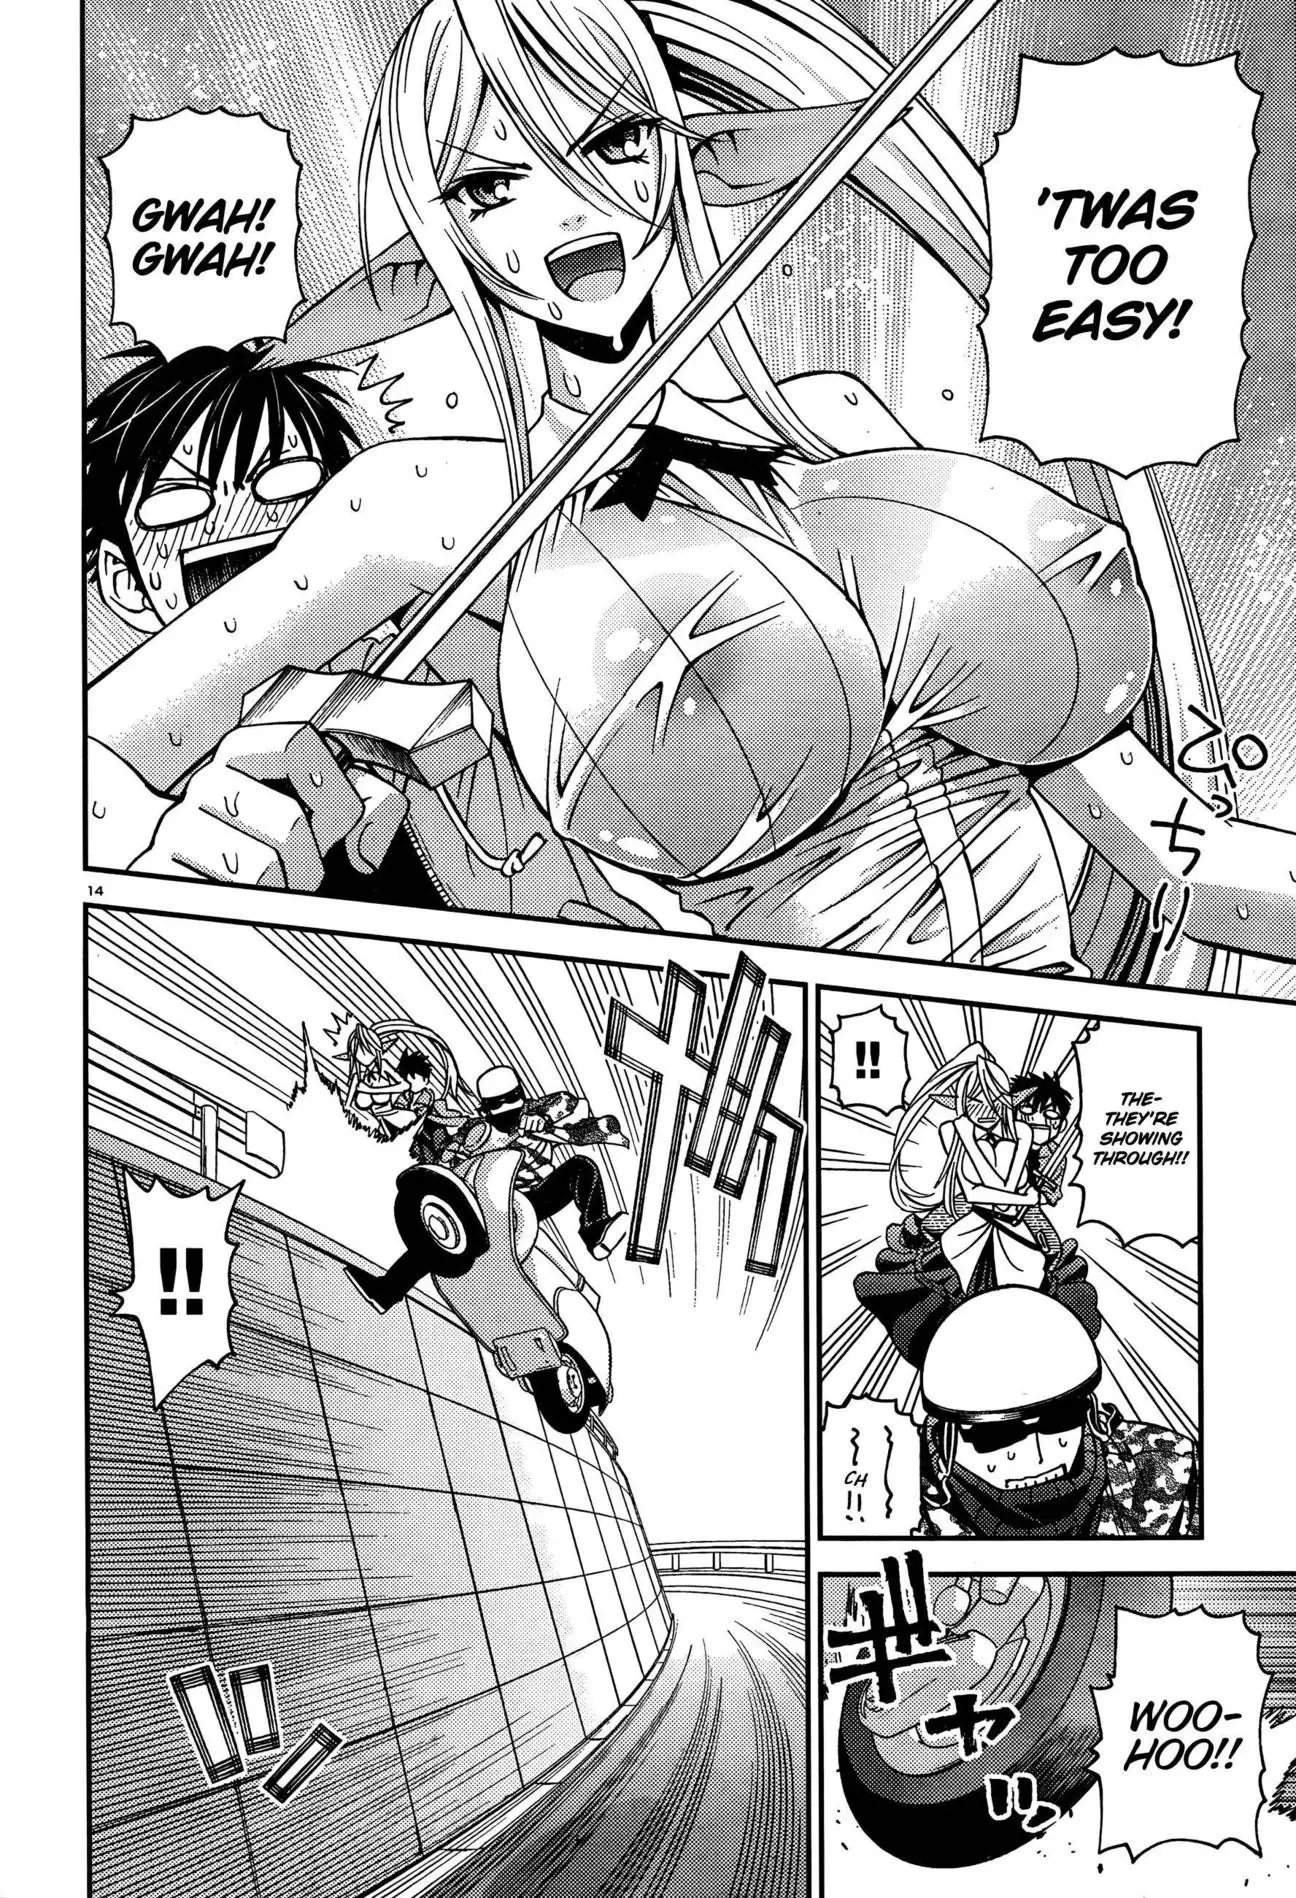 Monster Musume no Iru Nichijou - 4 page p_00014